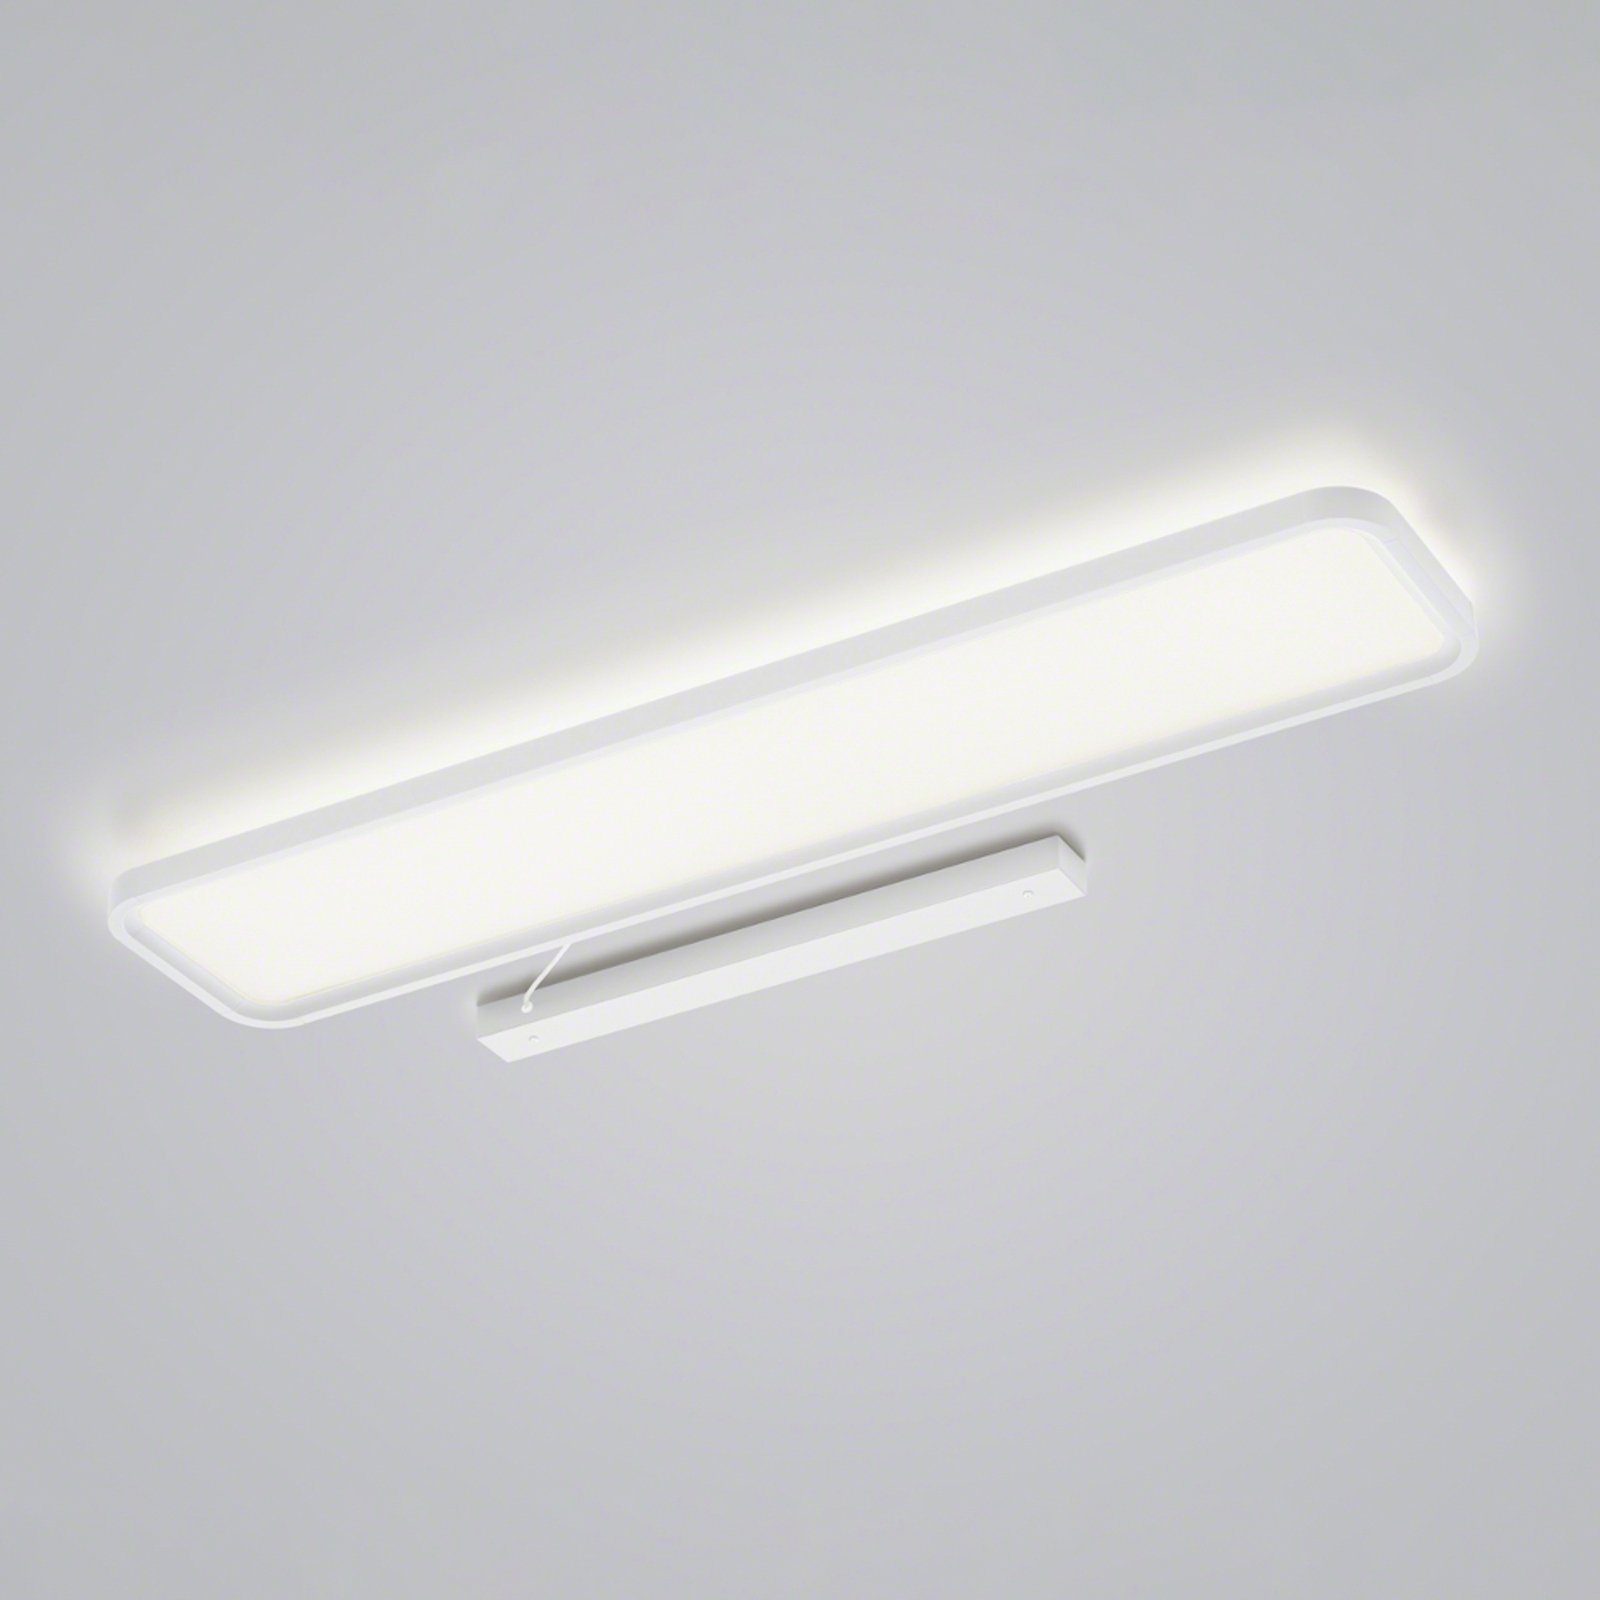 Helestra Vesp LED panel backlight 120 x 26cm white